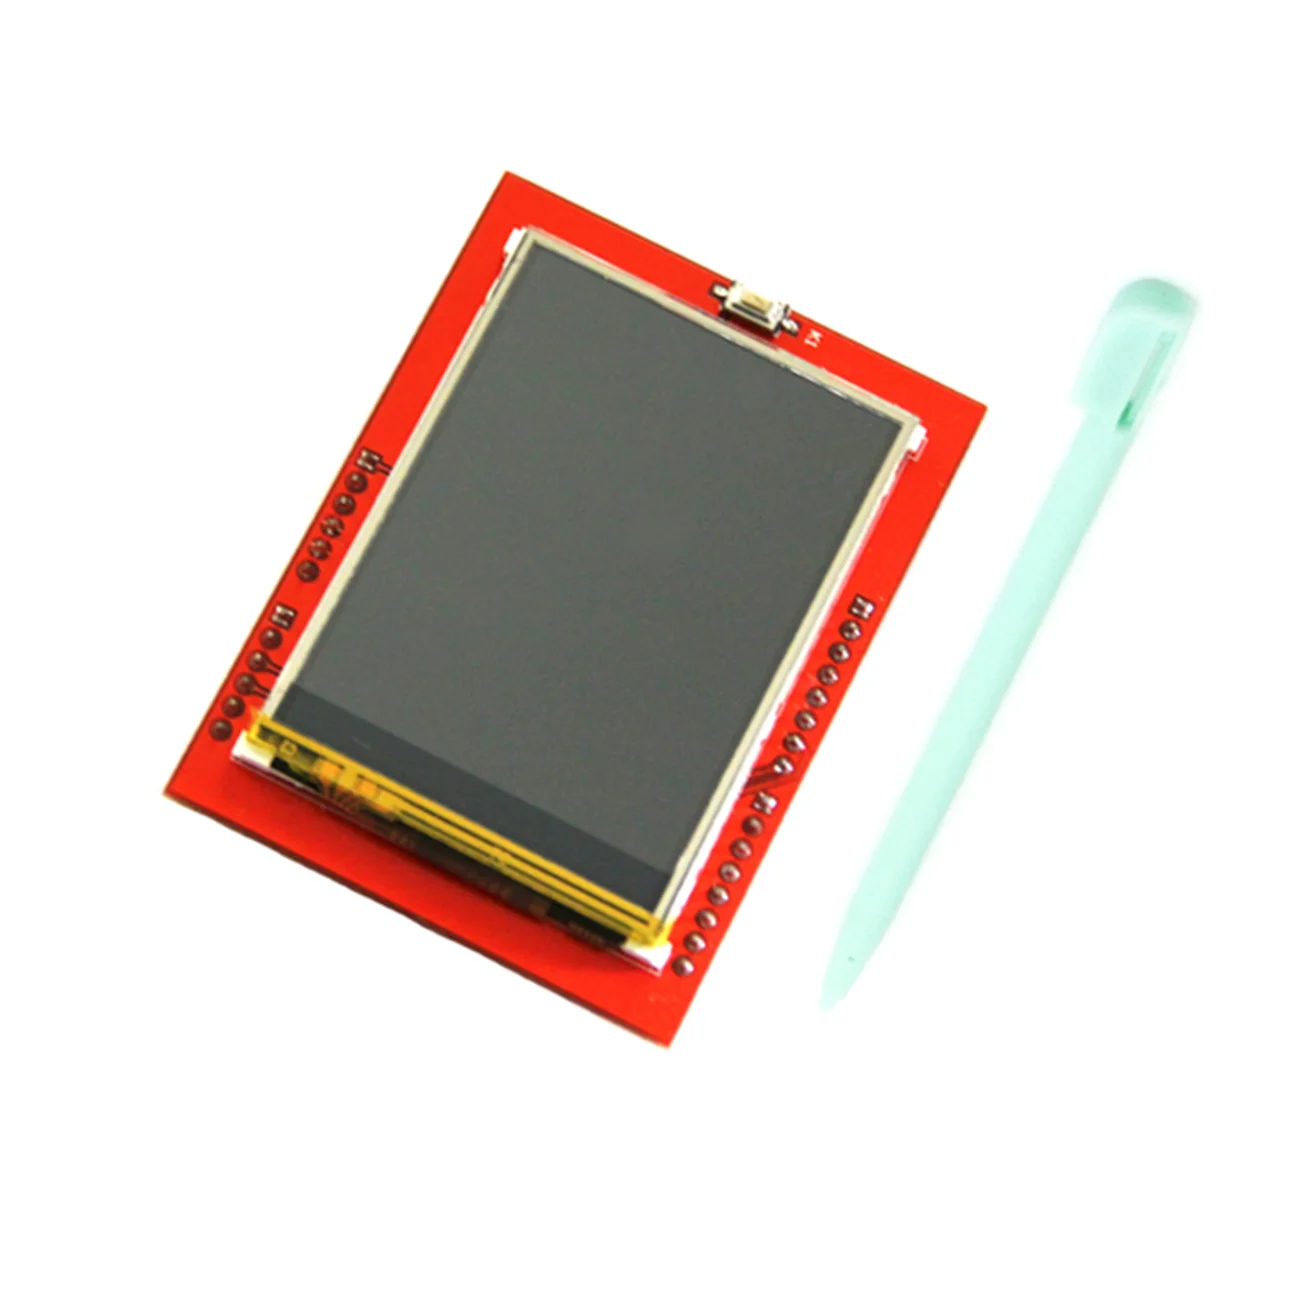 2,4 дюймовый ЖК-дисплей 240x320 SPI TFT ILI9341 Белый светодиодный модуль для Arduino o светодиодный ЖК-модуль последовательного порта 5 В/3,3 В PCB адаптер Micro SD карта